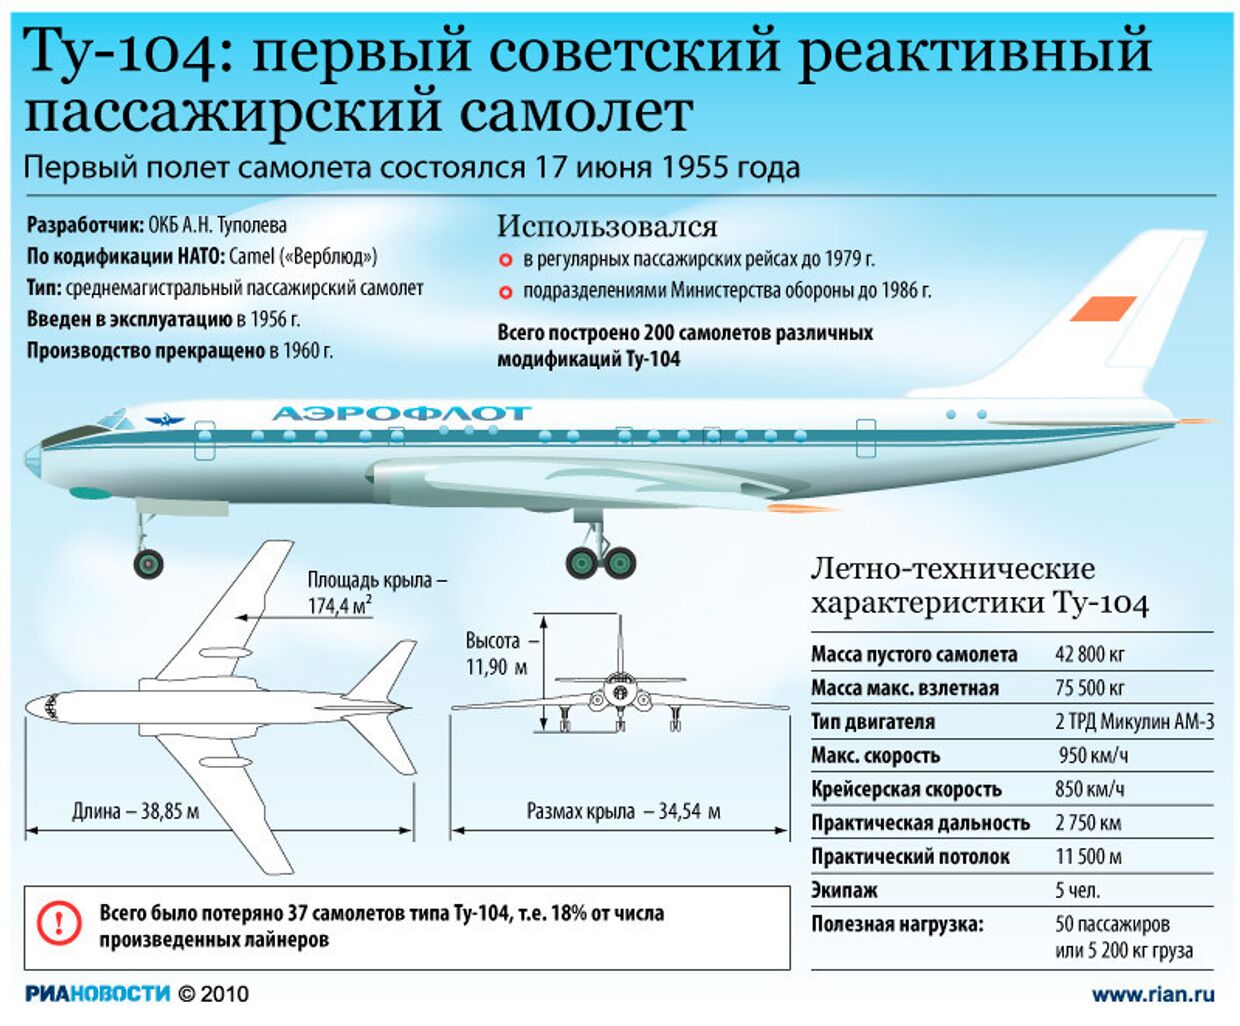 АН-124 Руслан характеристики технические